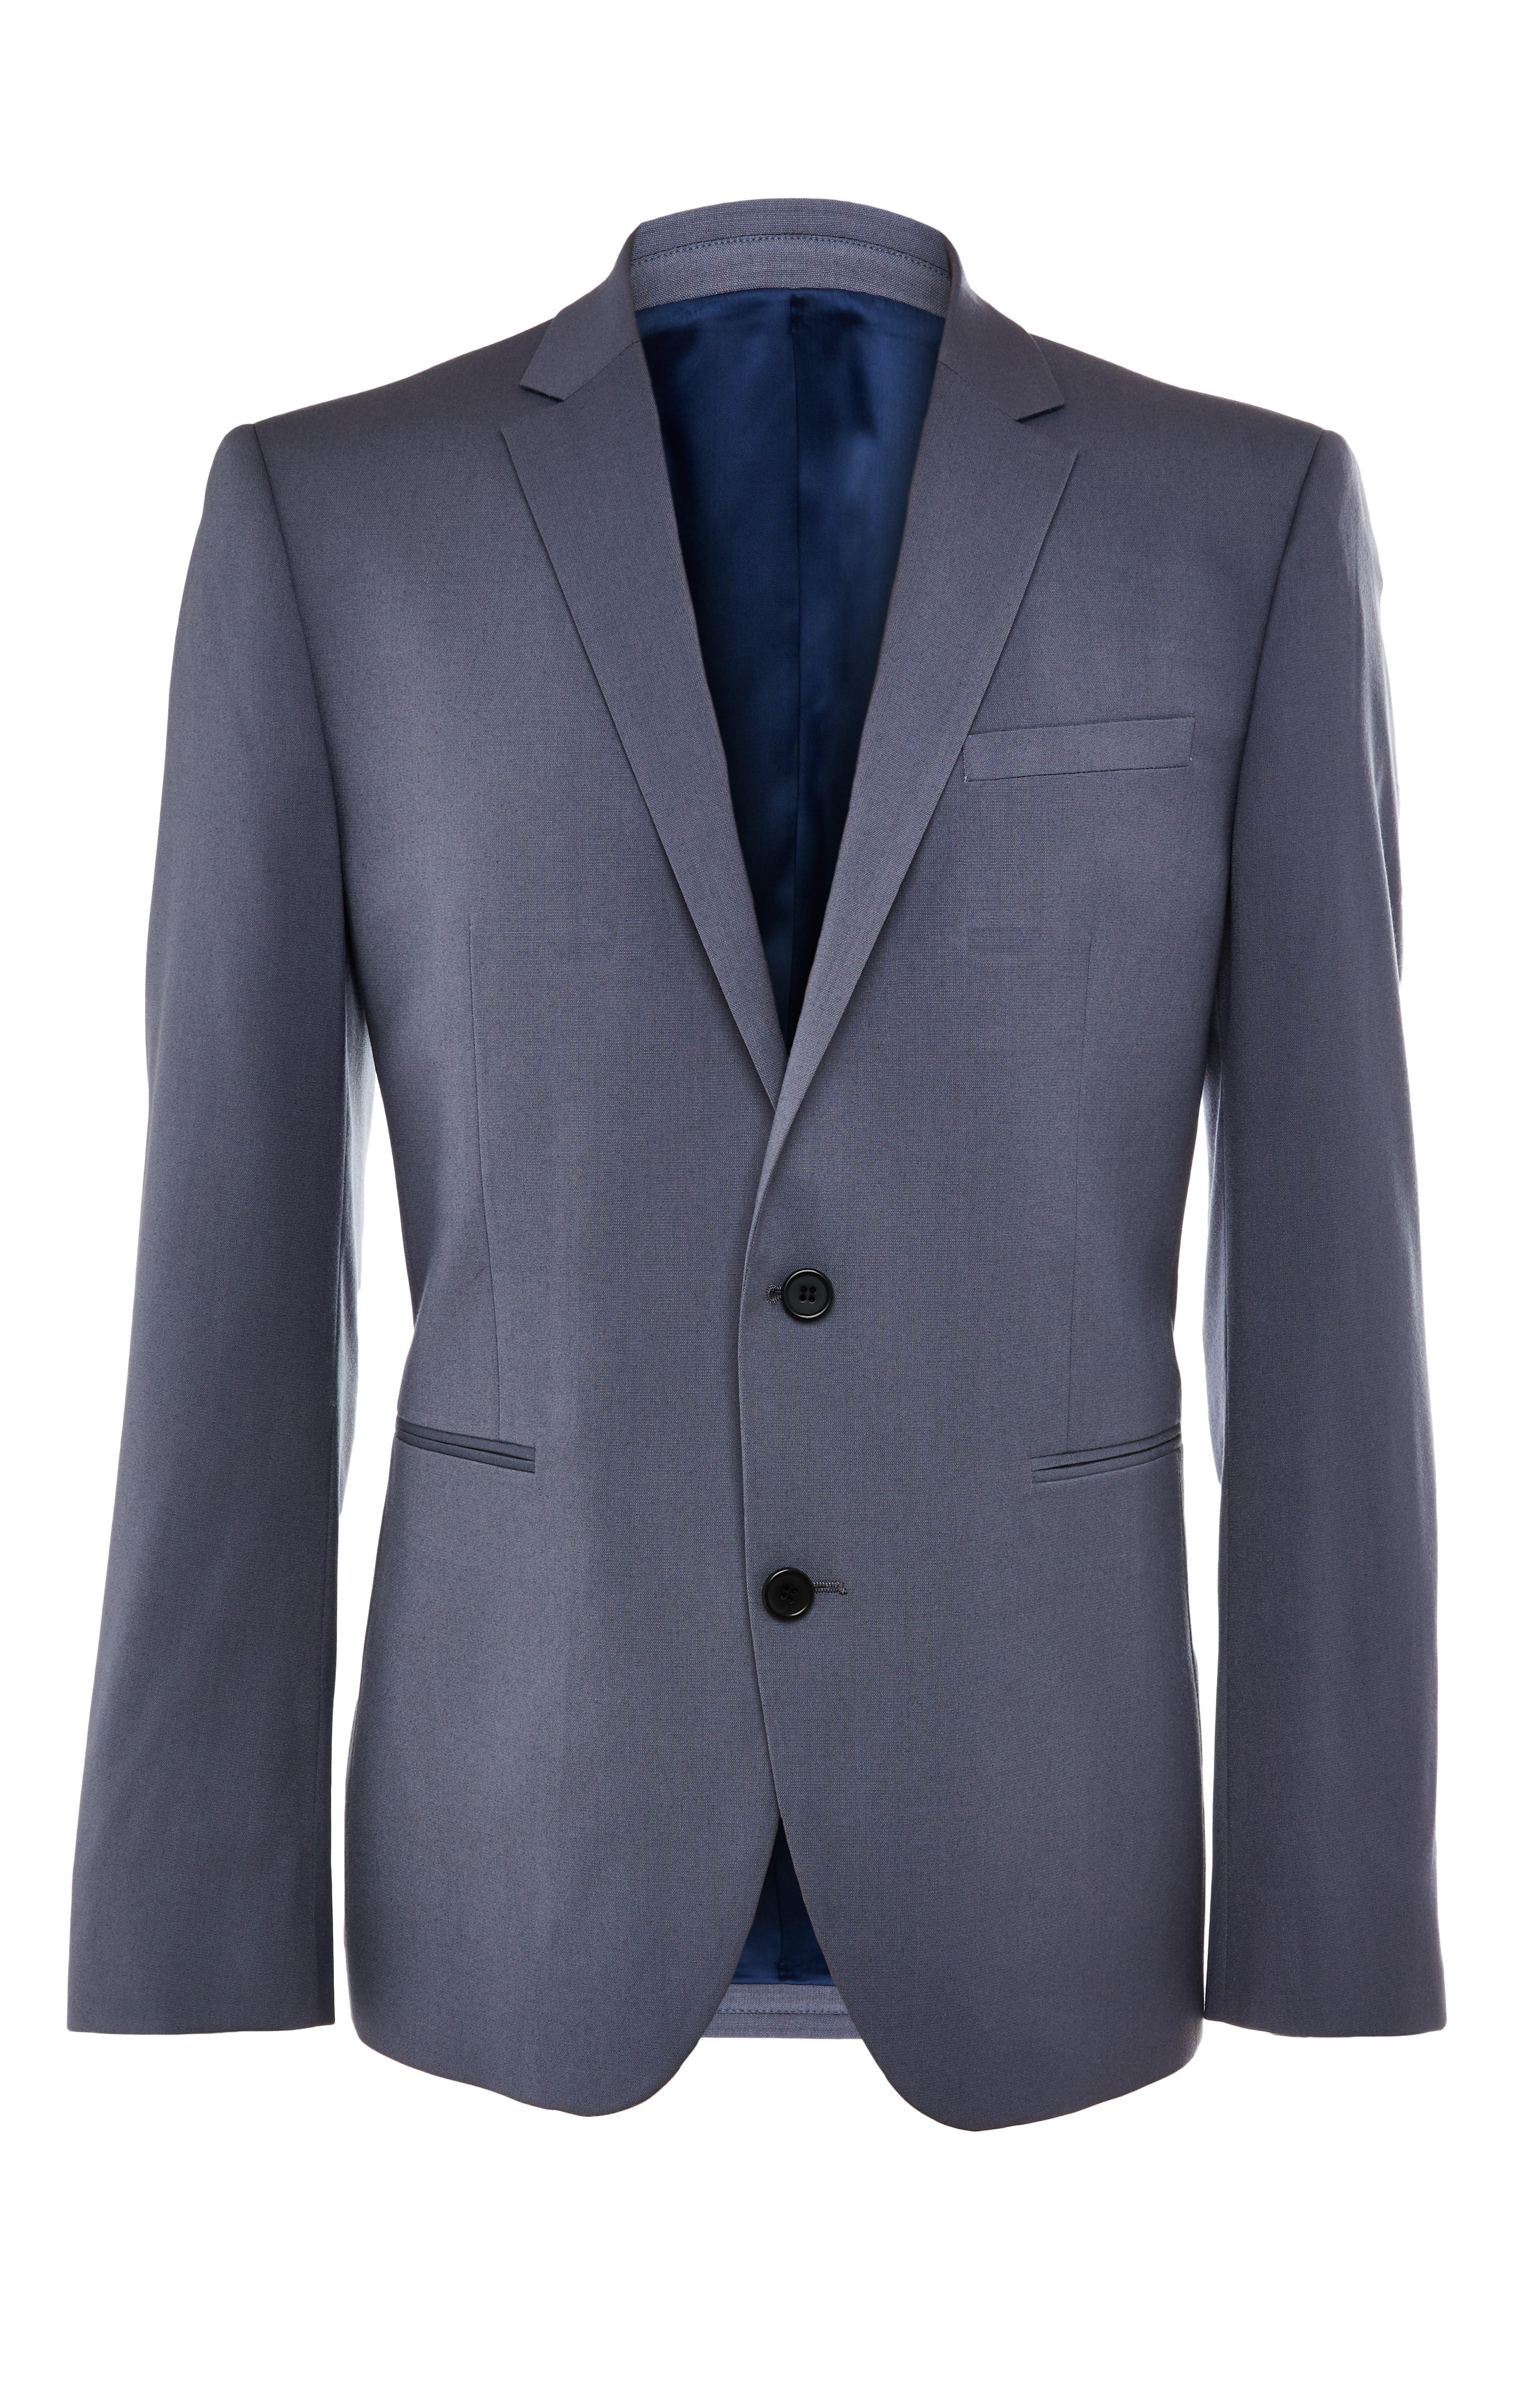 Premium Powder Blue Suit Jacket | Men's Suits | Men's Style | Our ...